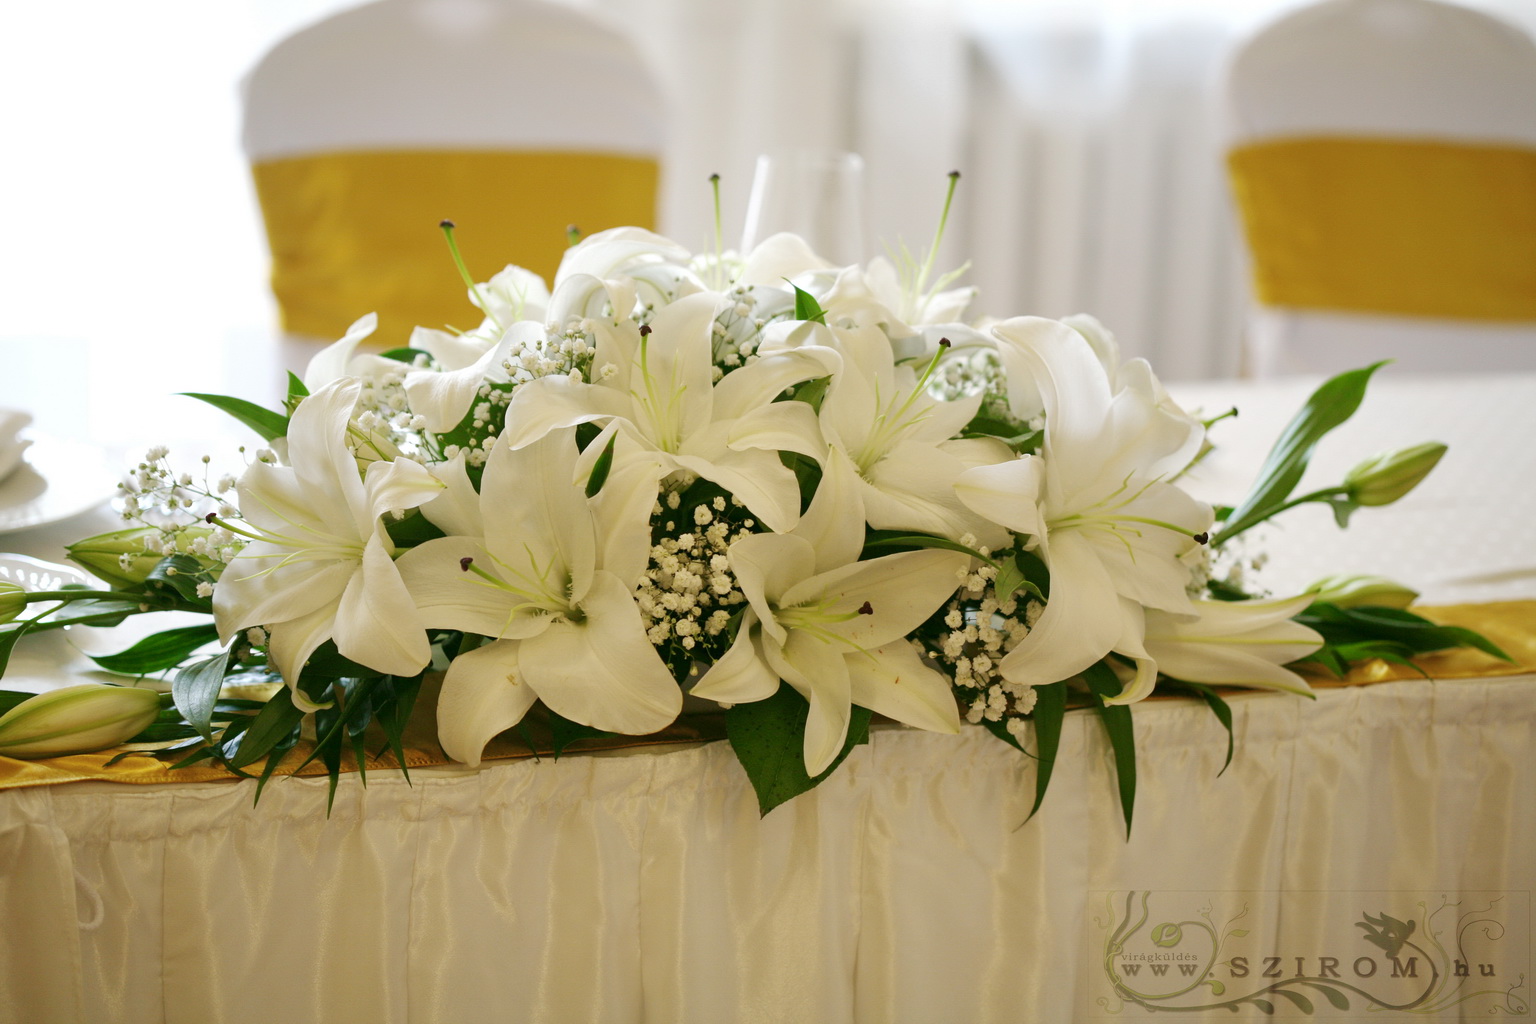 Virágküldés Budapest - főasztaldísz (liliom, rezgő, fehér),  Ádám Villa  Budapest, esküvő